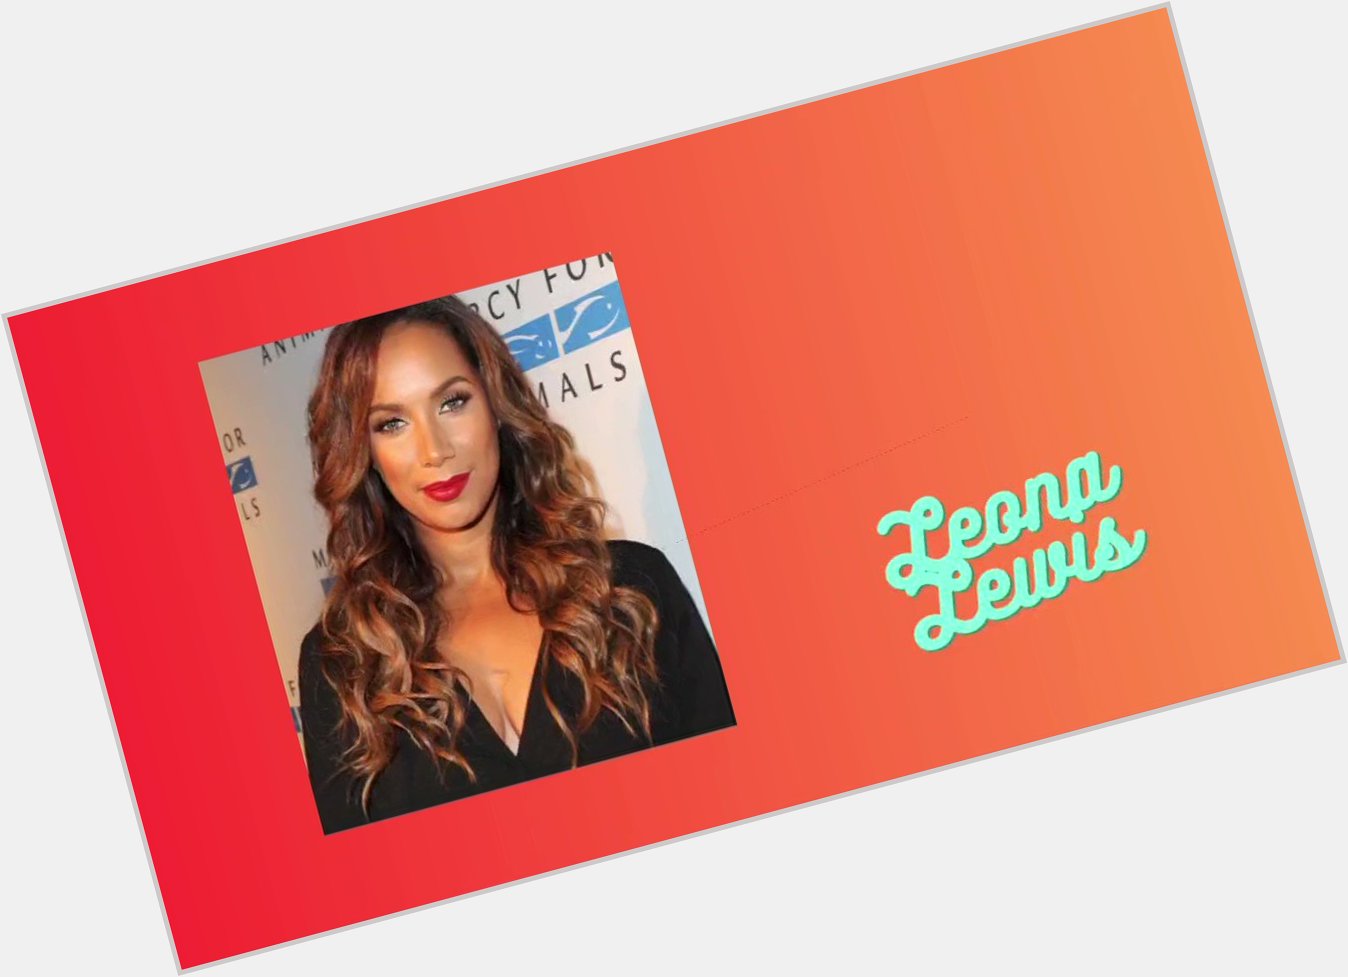 Happy birthday, Leona Lewis!  